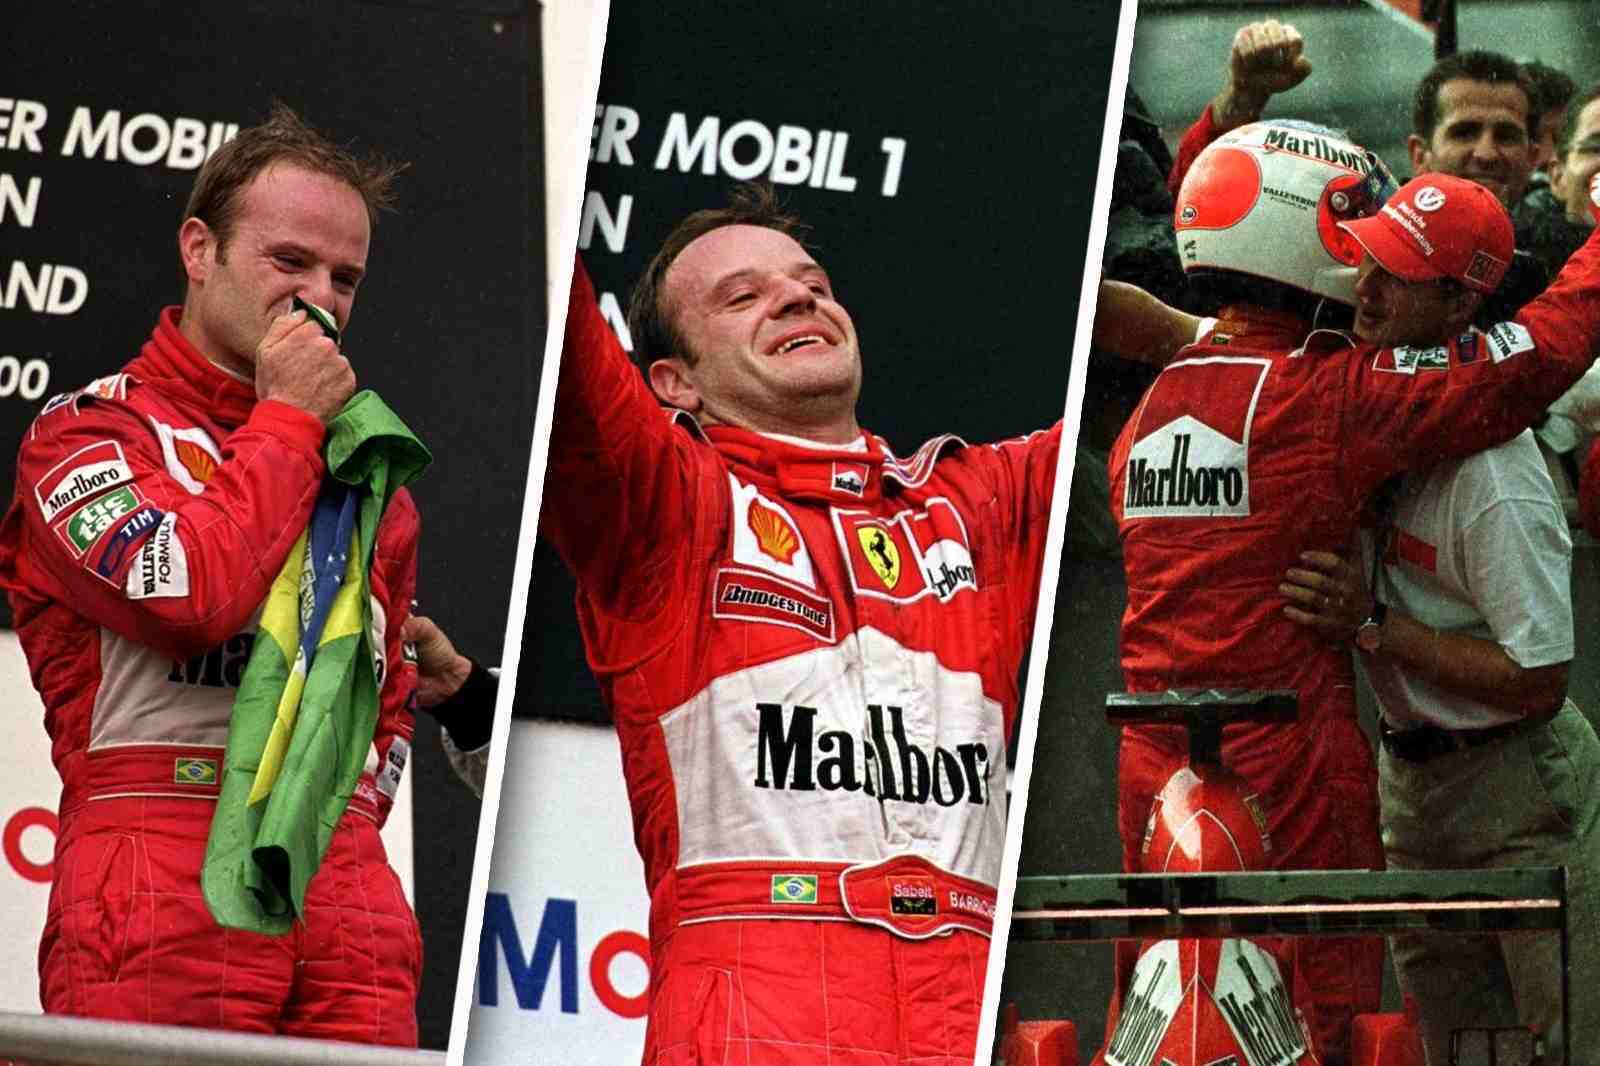 Rubens Barrichello, um dos maiores nomes da história do automobilismo brasileira, venceu o seu primeiro GP na Fórmula 1 há exatos 20 anos. Relembre nesta galeria, em imagens, momentos marcantes daquele grande prêmio. No fim, o brasileiro se emocionou com o triunfo. Confira a seguir: